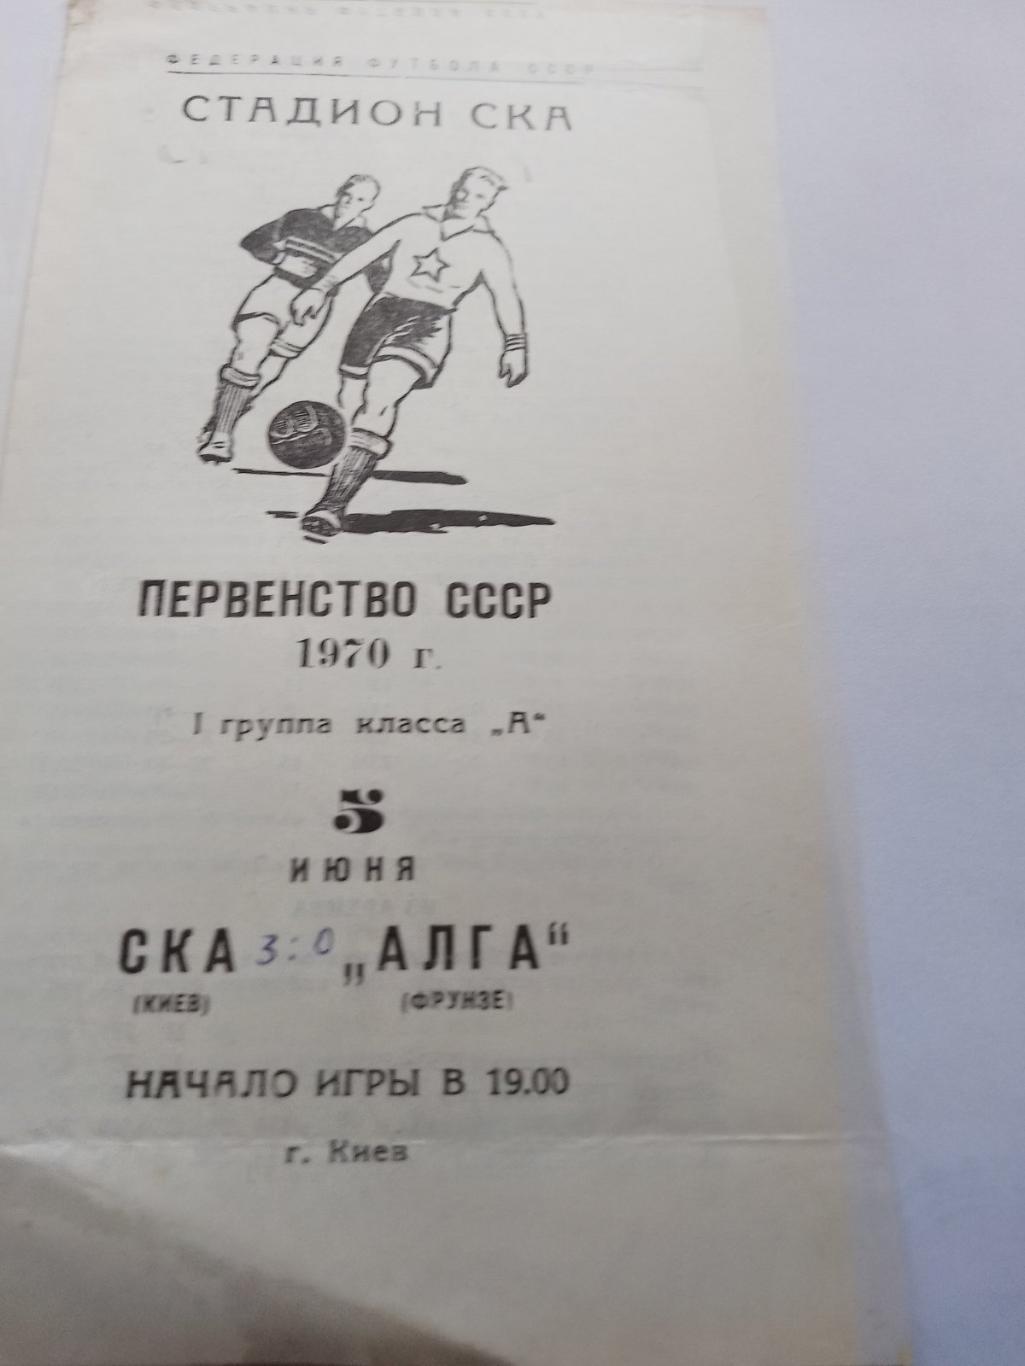 ска київ- алга фрунзе. 1970.к.